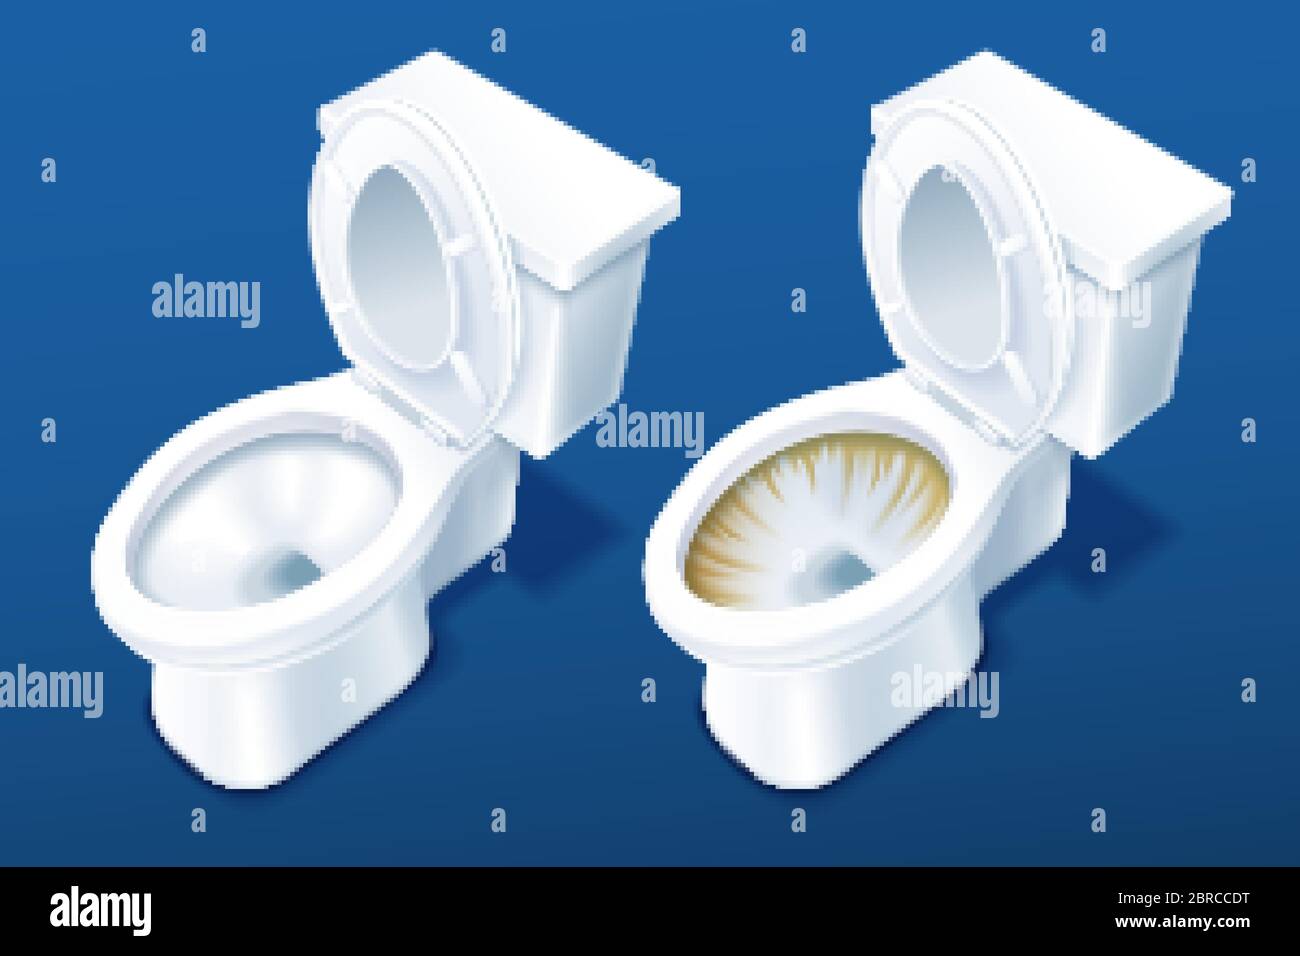 illustration 3d comparant deux cuvettes de toilettes sur fond bleu, avant et après l'application du détergent Illustration de Vecteur